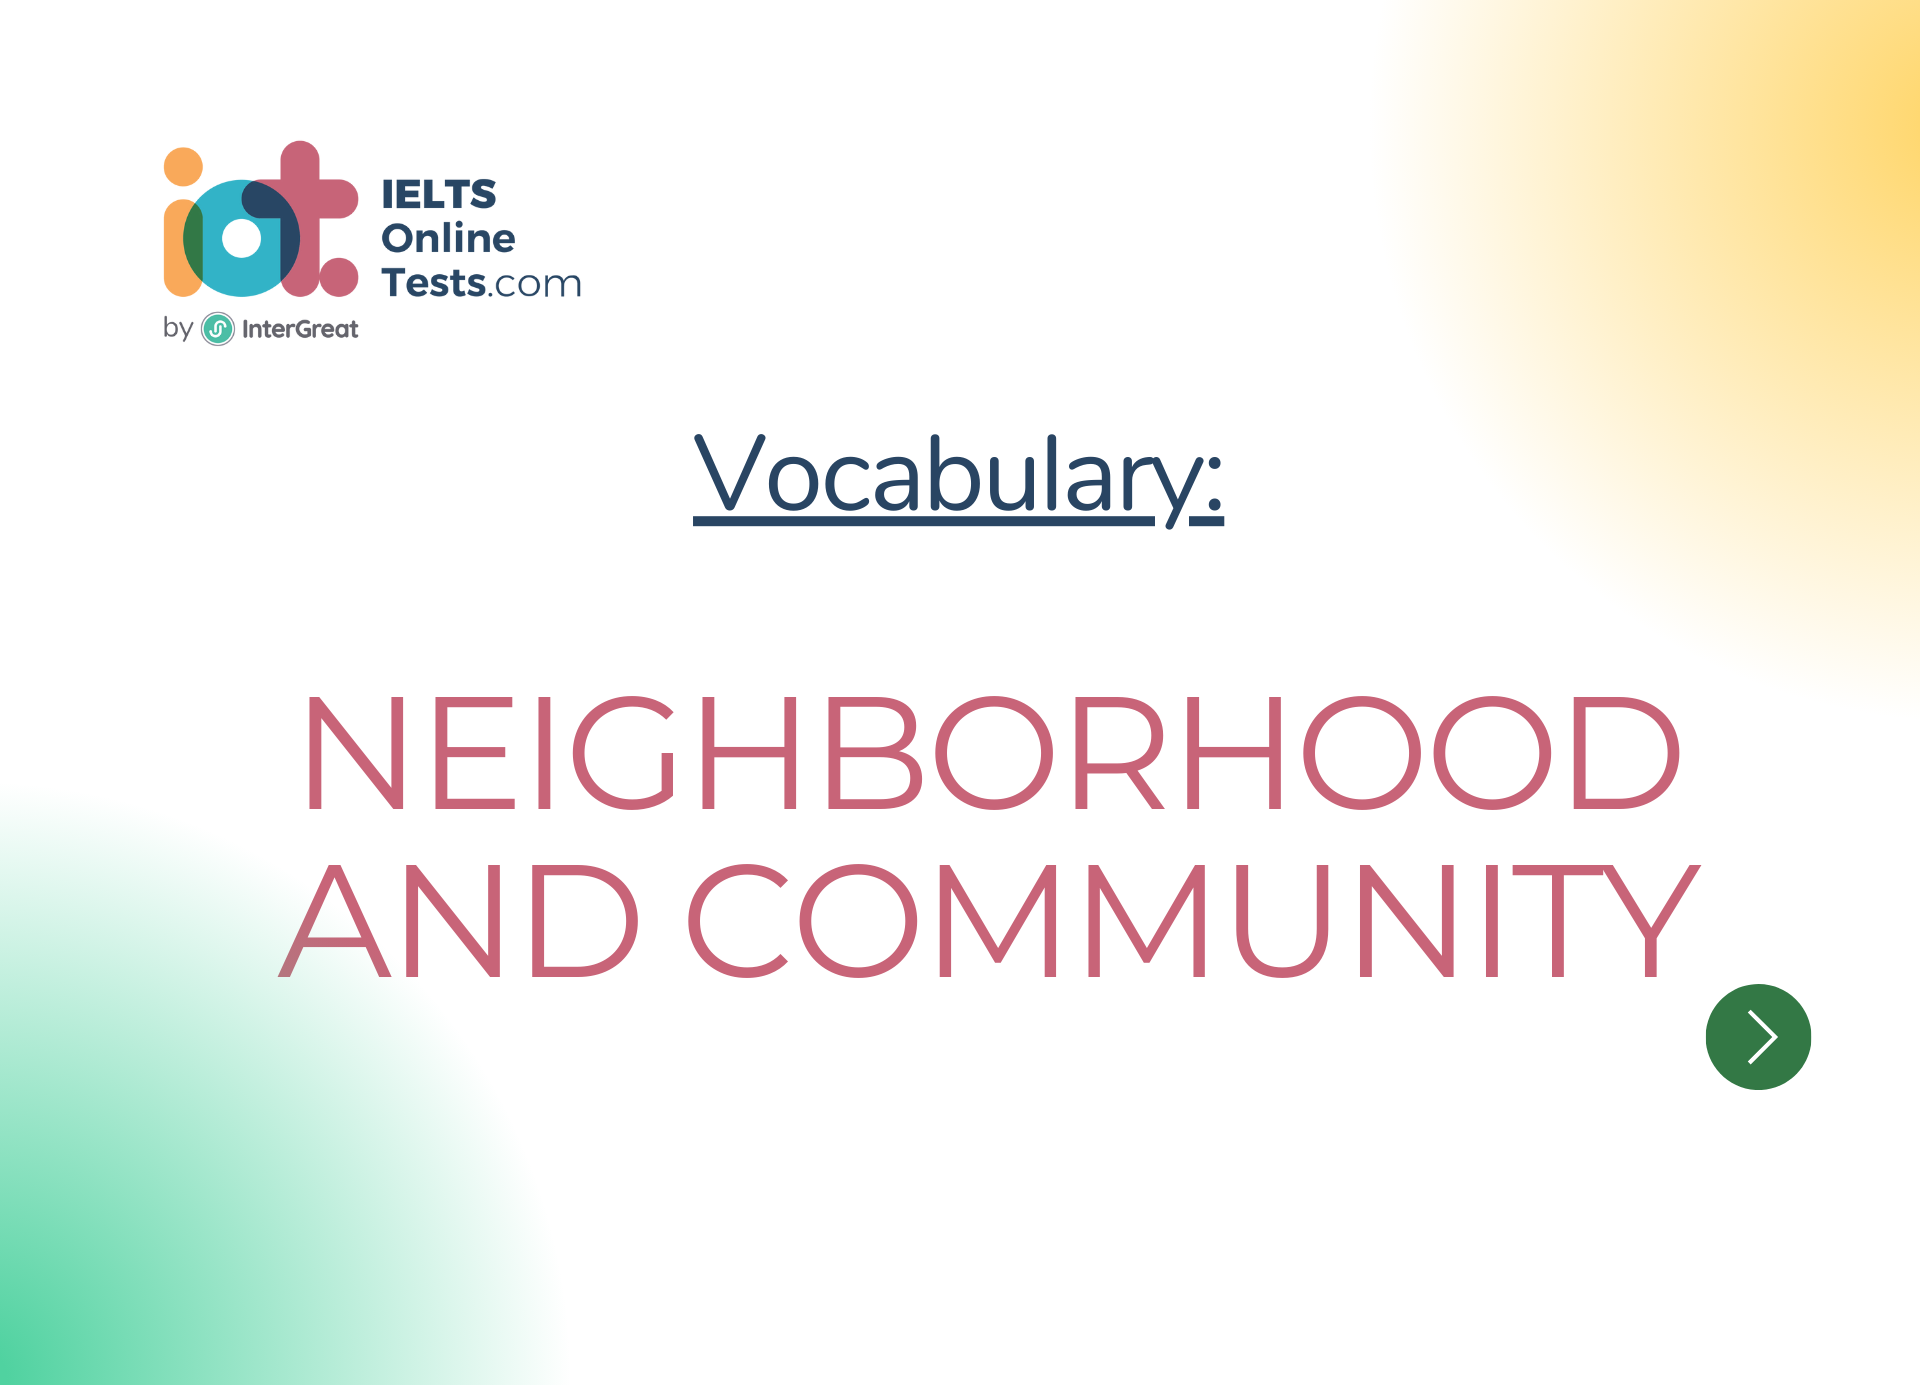 Neighborhood and community